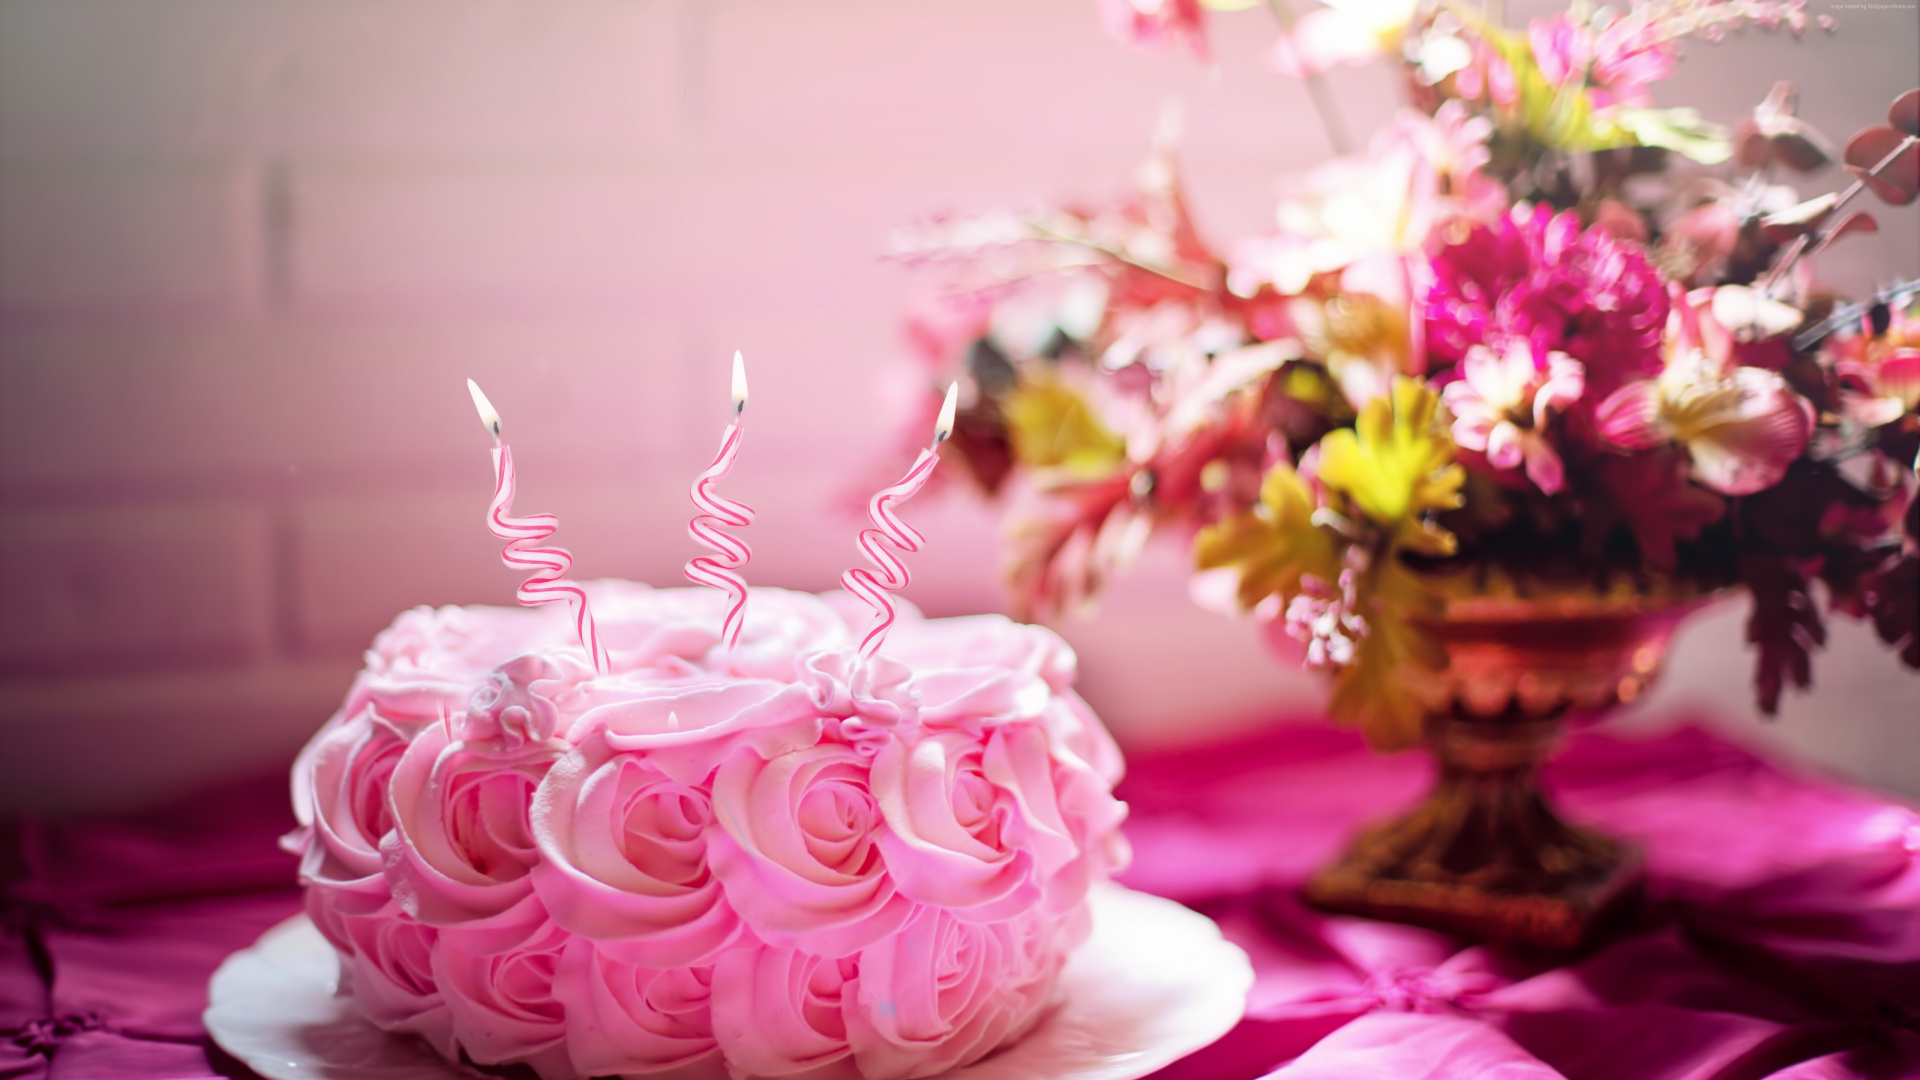 结冰, 生日蛋糕, 蛋糕装饰, 粉红色, 甜头 壁纸 1920x1080 允许